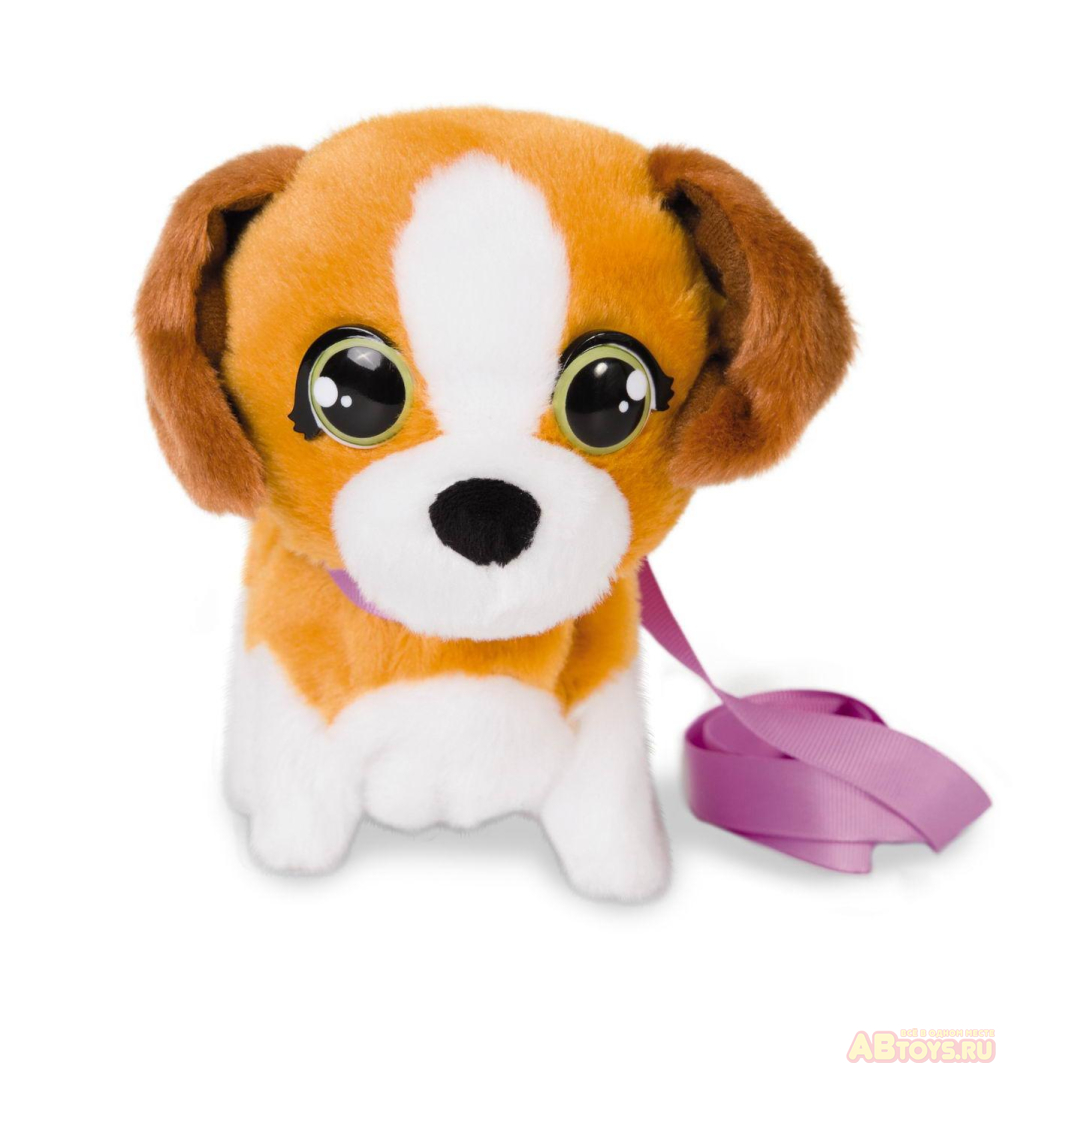 Игрушка интерактивная IMC Toys Club Petz Щенок Mini Walkiez Beagle интерактивный, ходячий, со звуковыми эффектами